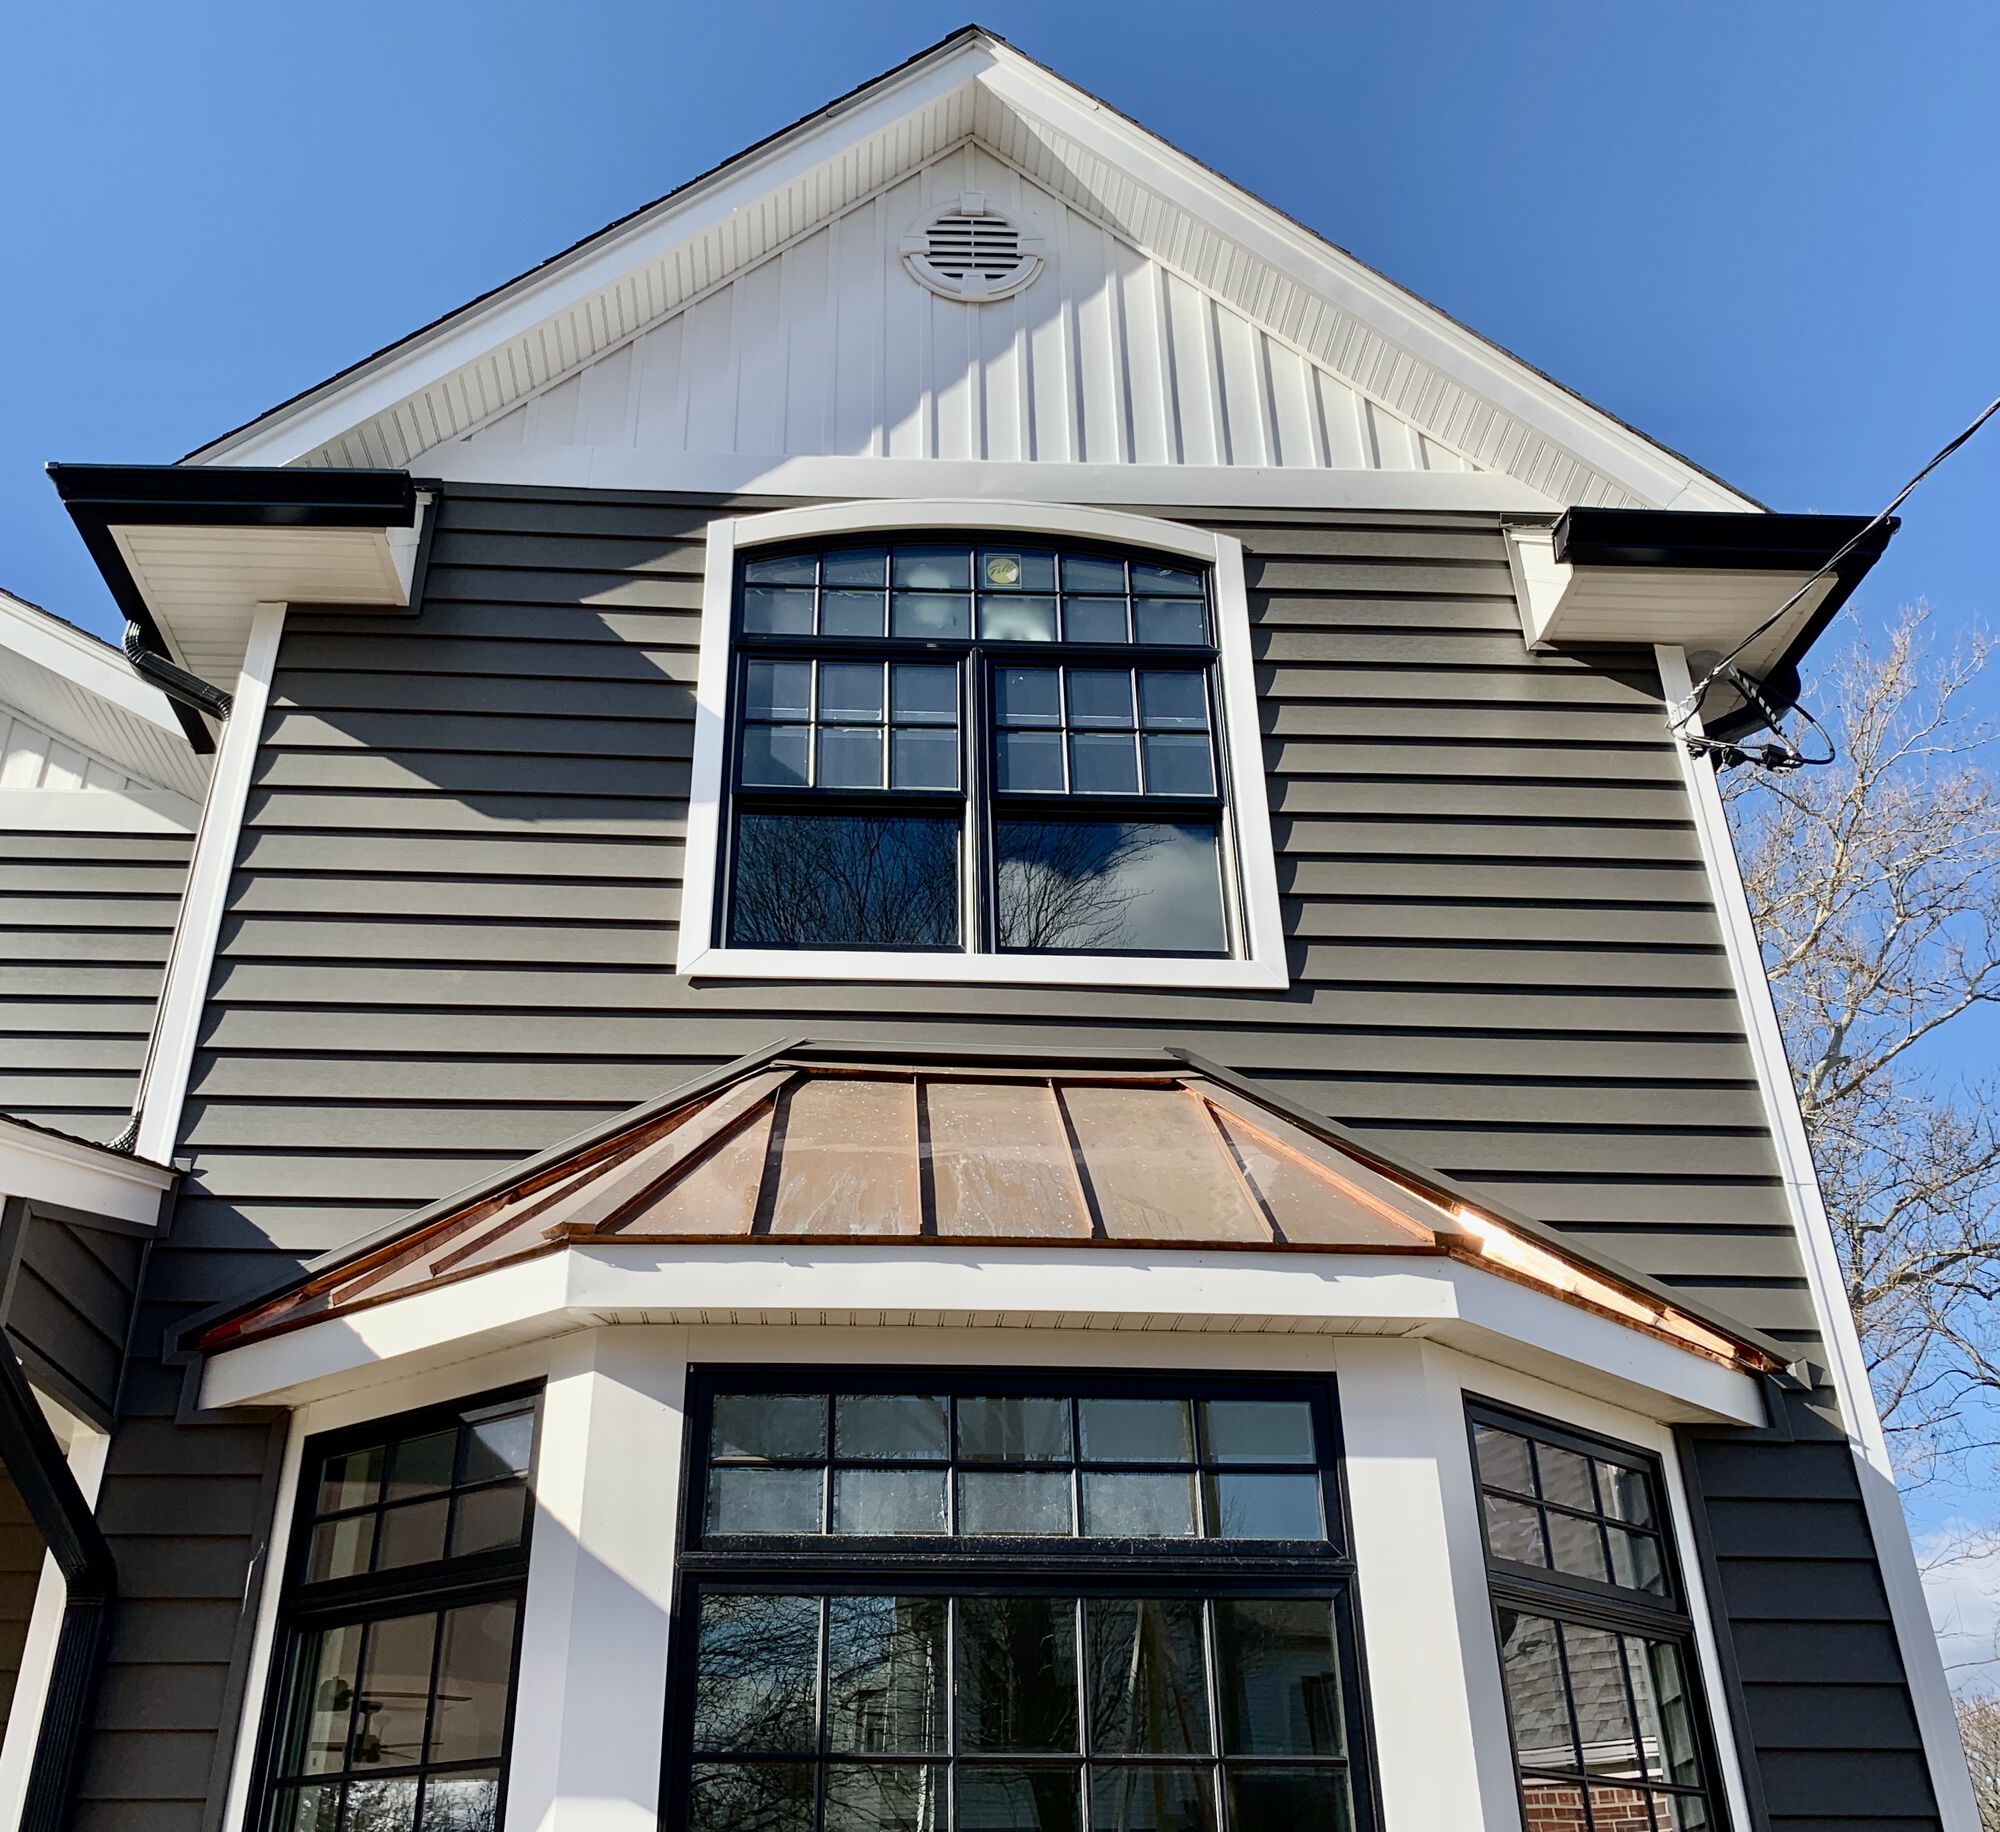 Pella Bay Window with Copper Roof in Bergen County NJ